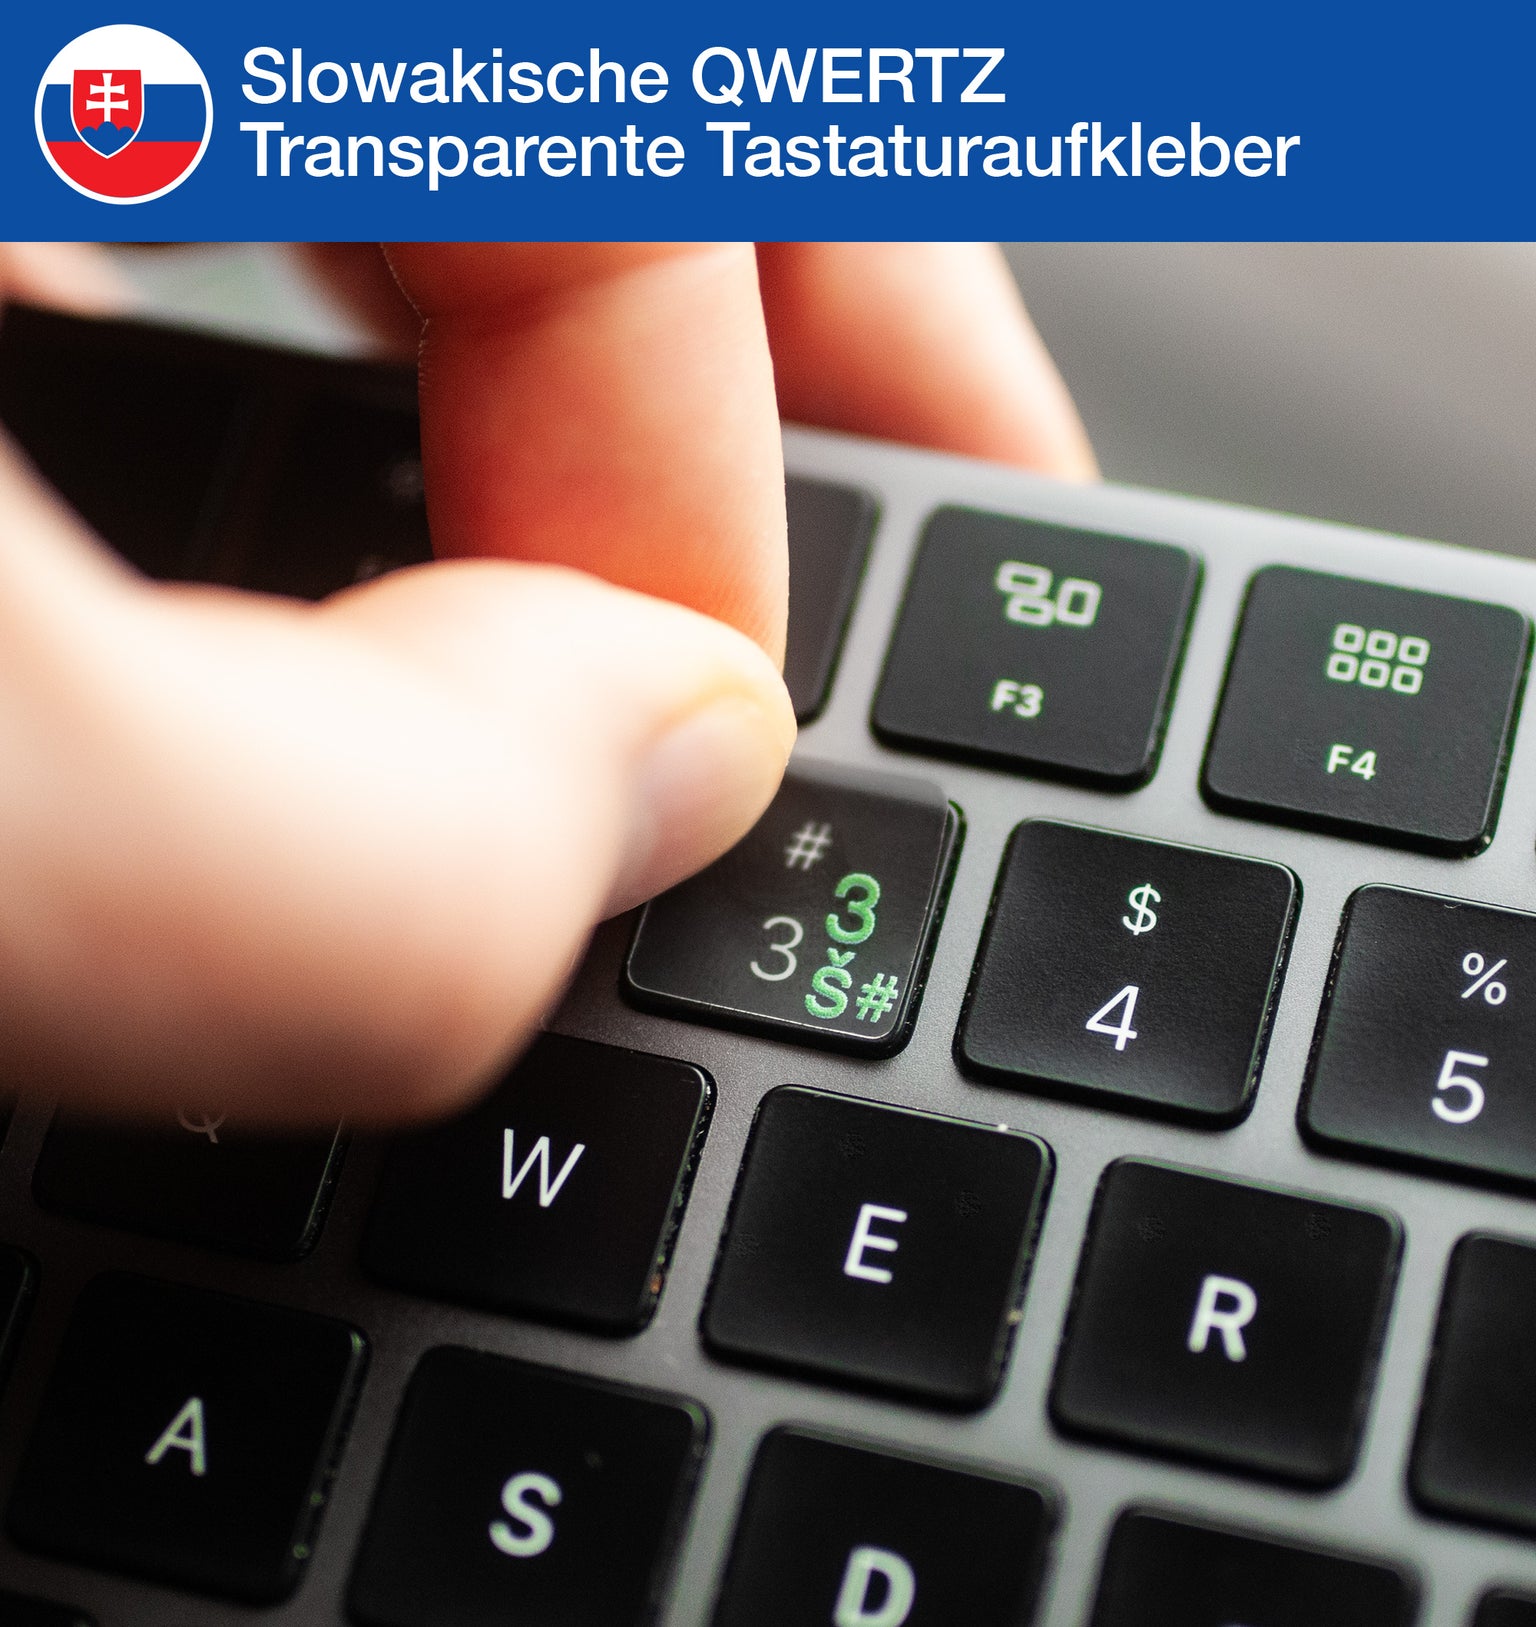 Slowakische QWERTZ Transparente Tastaturaufkleber